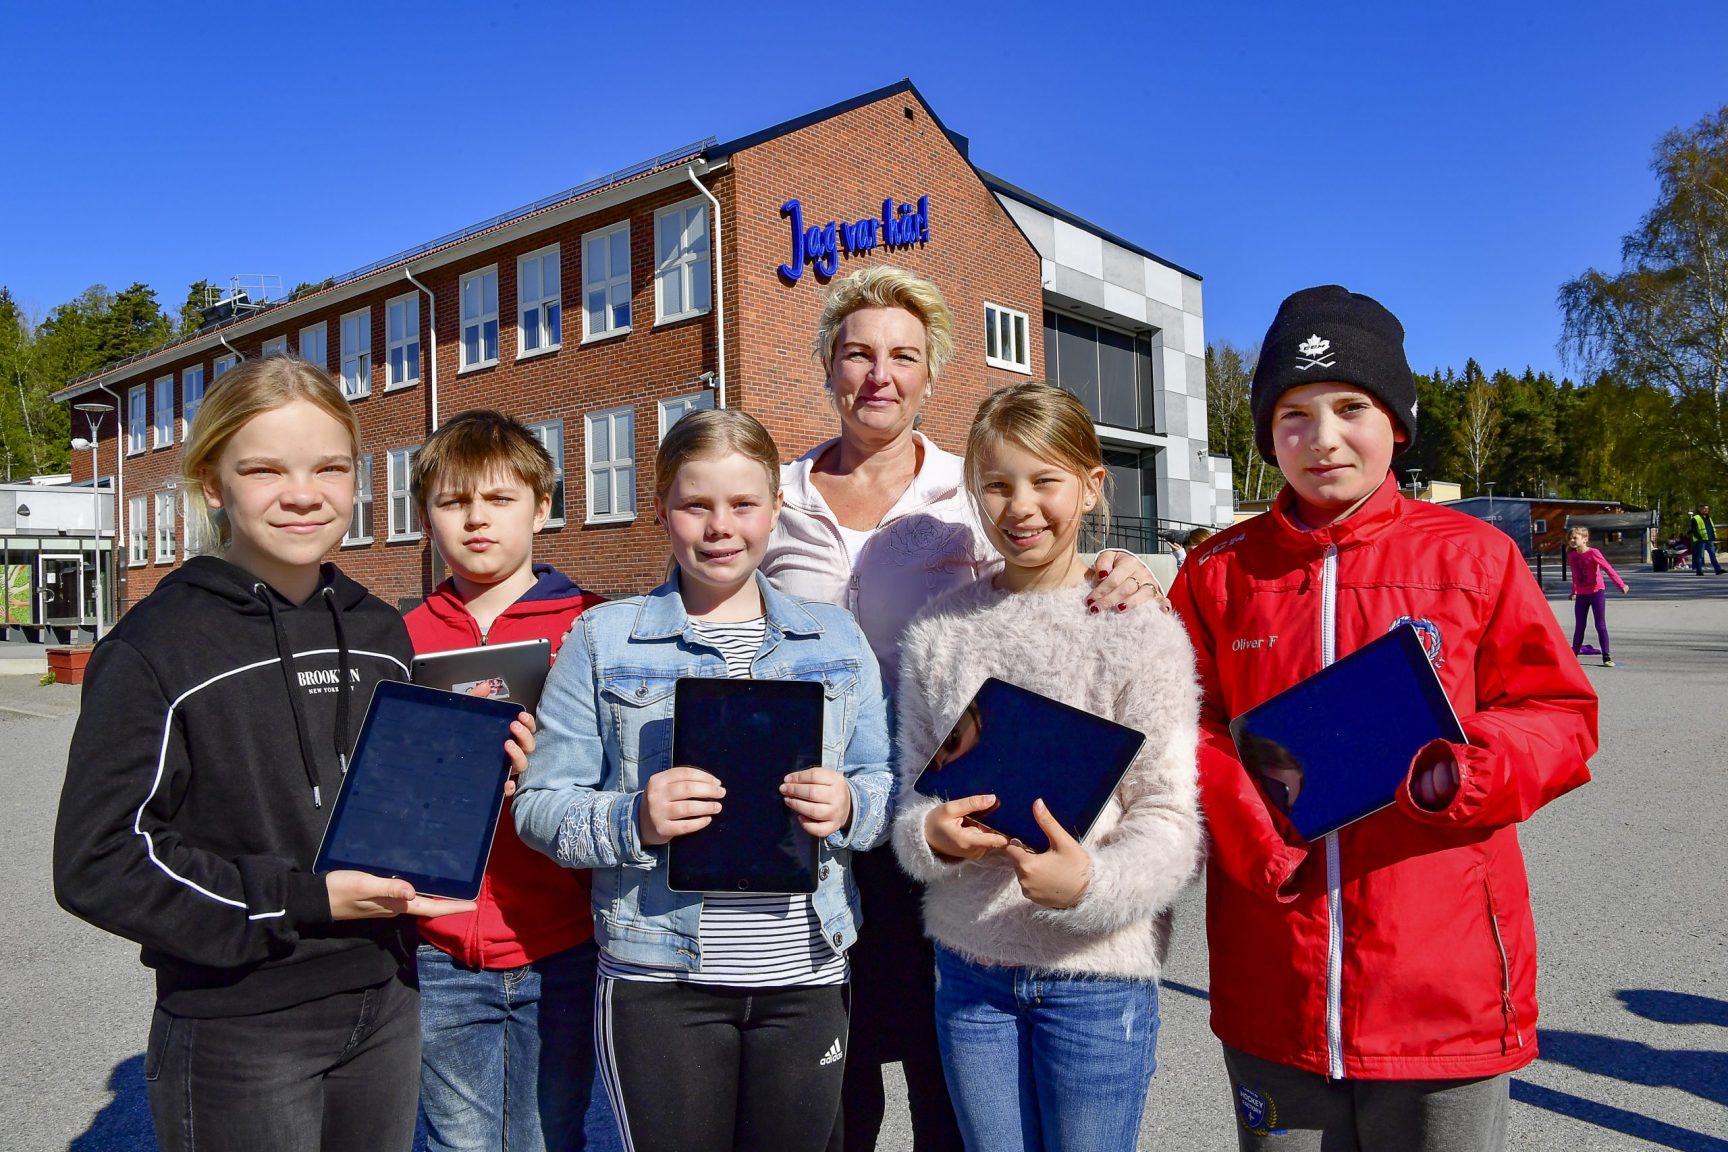 26 باحثاً سويديّاً يدعون لفرض الكمامات في المدارس الكومبس